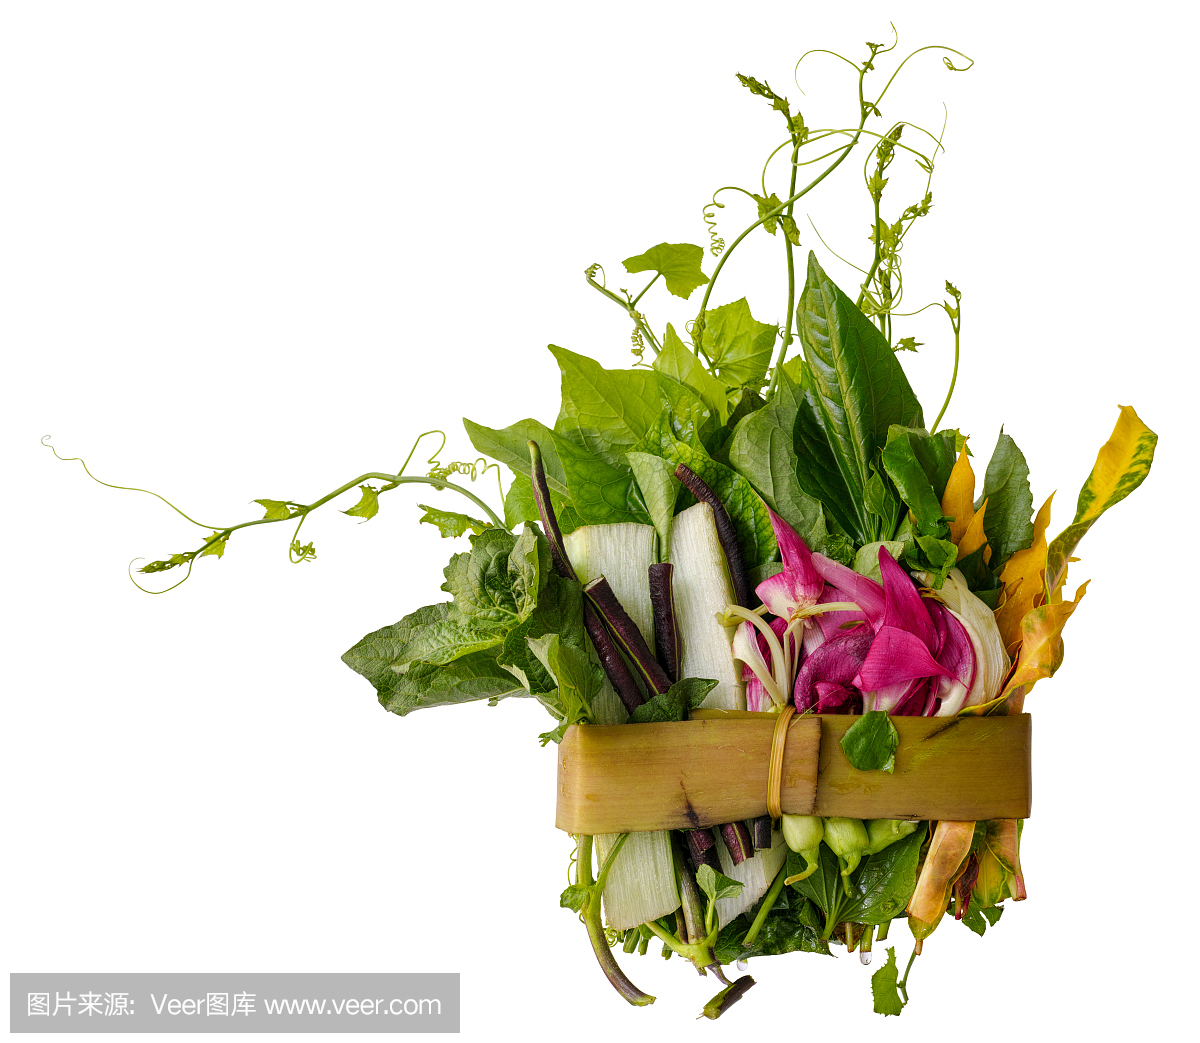 北泰国草药,香料和蔬菜,北泰国传统食谱称为高